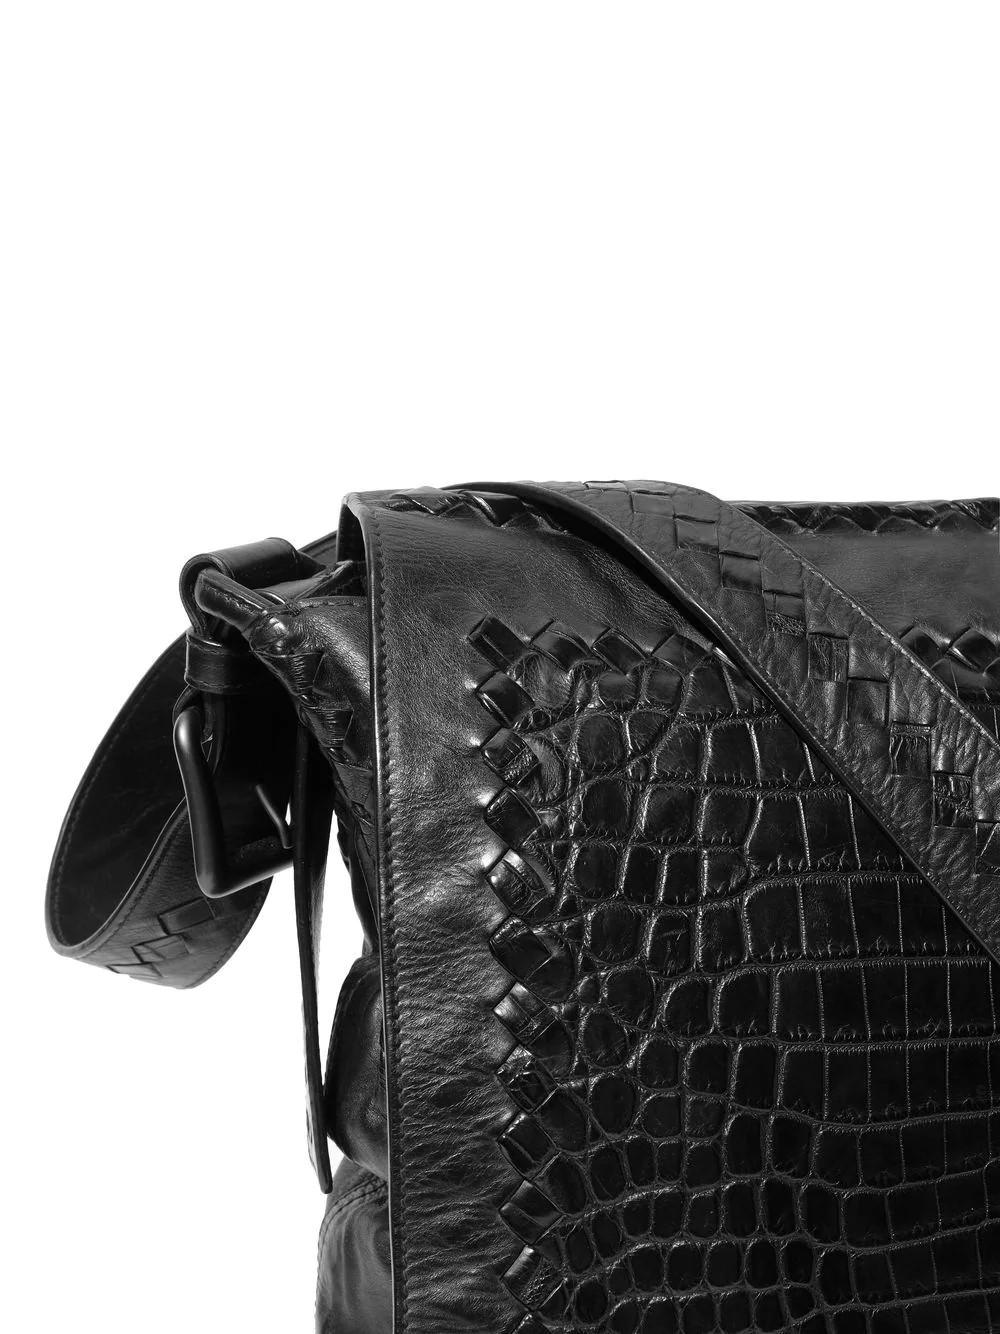 Diese gebrauchte Umhängetasche aus hochwertigem Leder stammt von der Frühjahrs-Laufstegkollektion 2011 von Bottega Veneta. Die Tasche verfügt über einen Magnetverschluss mit Überschlag, der mit der charakteristischen Intrecciato-Paspel verziert ist,